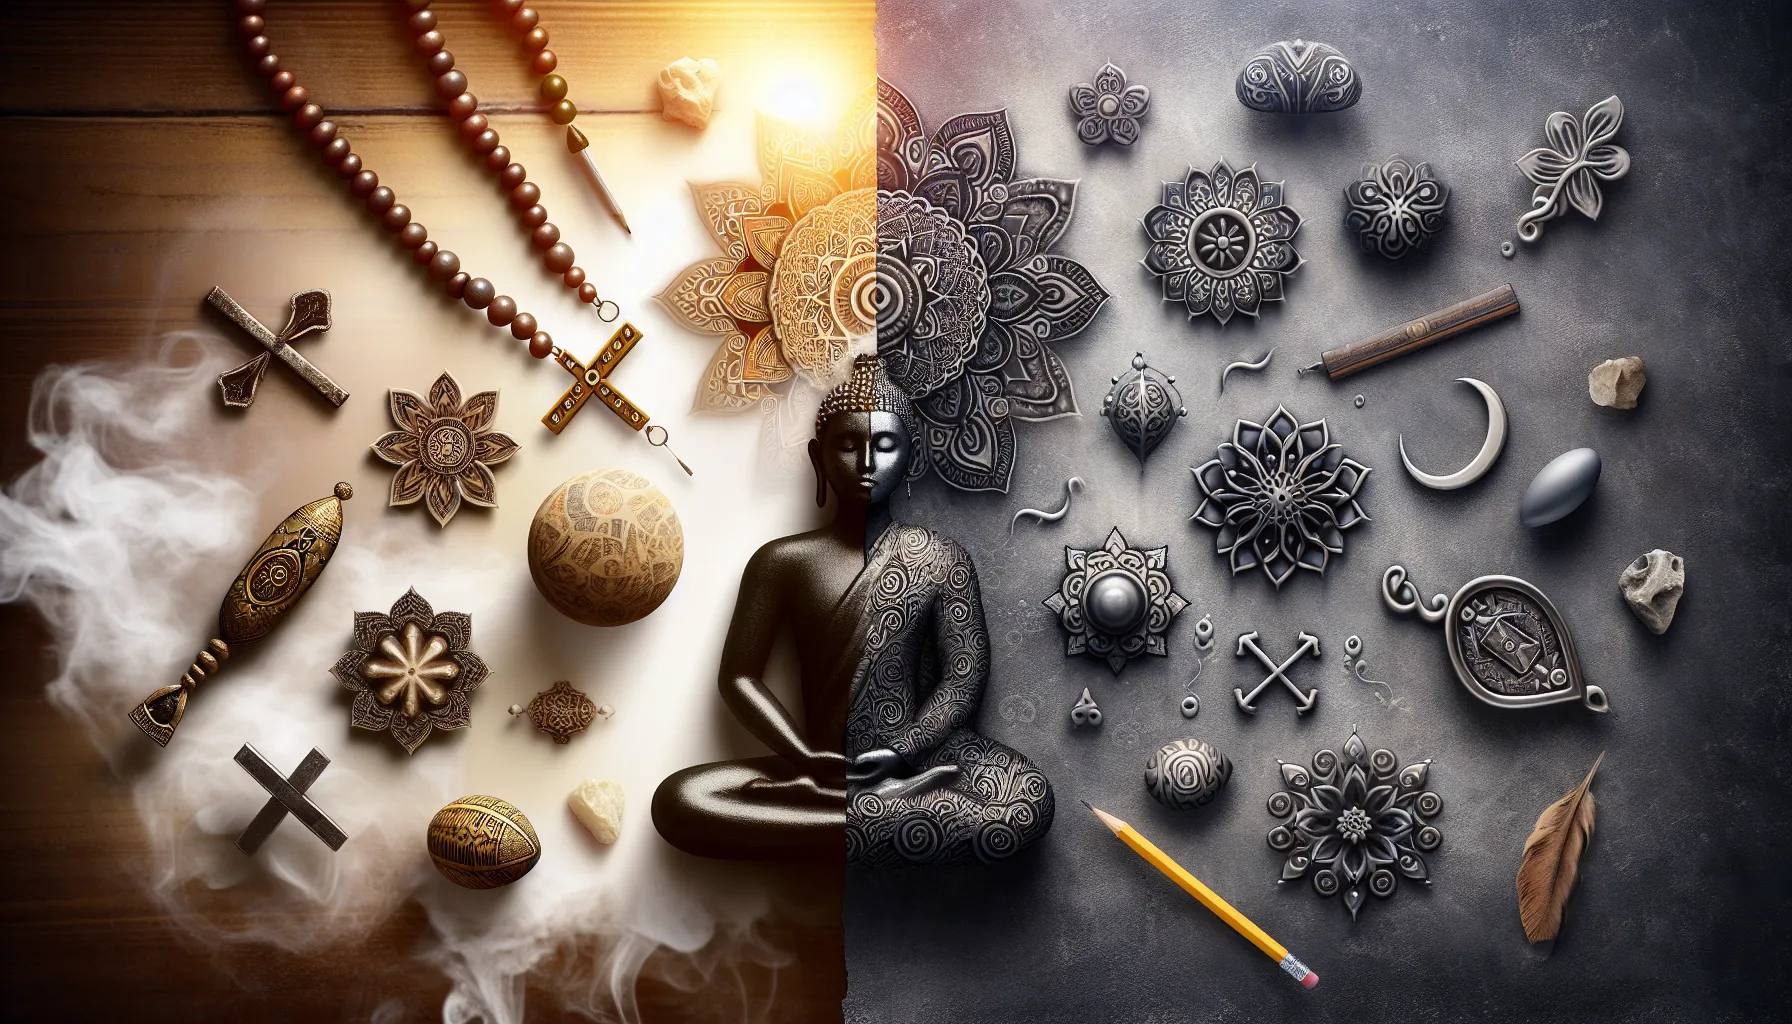 Imagen comparativa entre símbolos religiosos y conceptos espirituales para ilustrar la diferencia entre religión y espiritualidad.